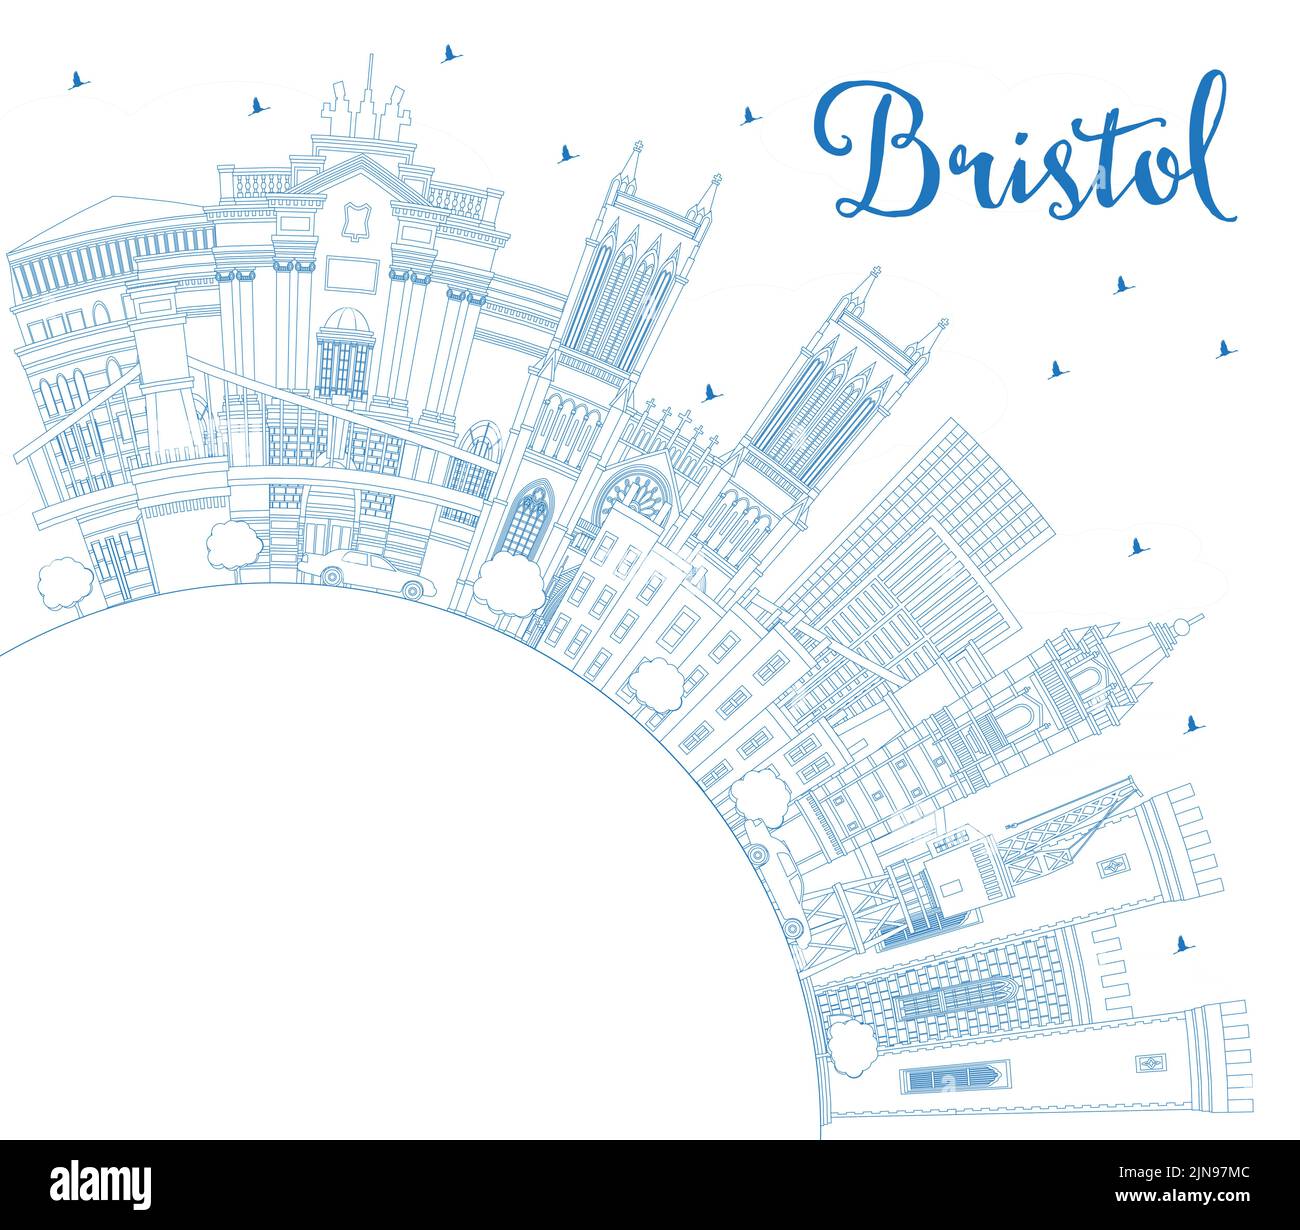 Outline Bristol UK City Skyline avec Blue Buildings et Copy Space. Illustration vectorielle. Bristol England Cityscape avec des sites touristiques. Illustration de Vecteur